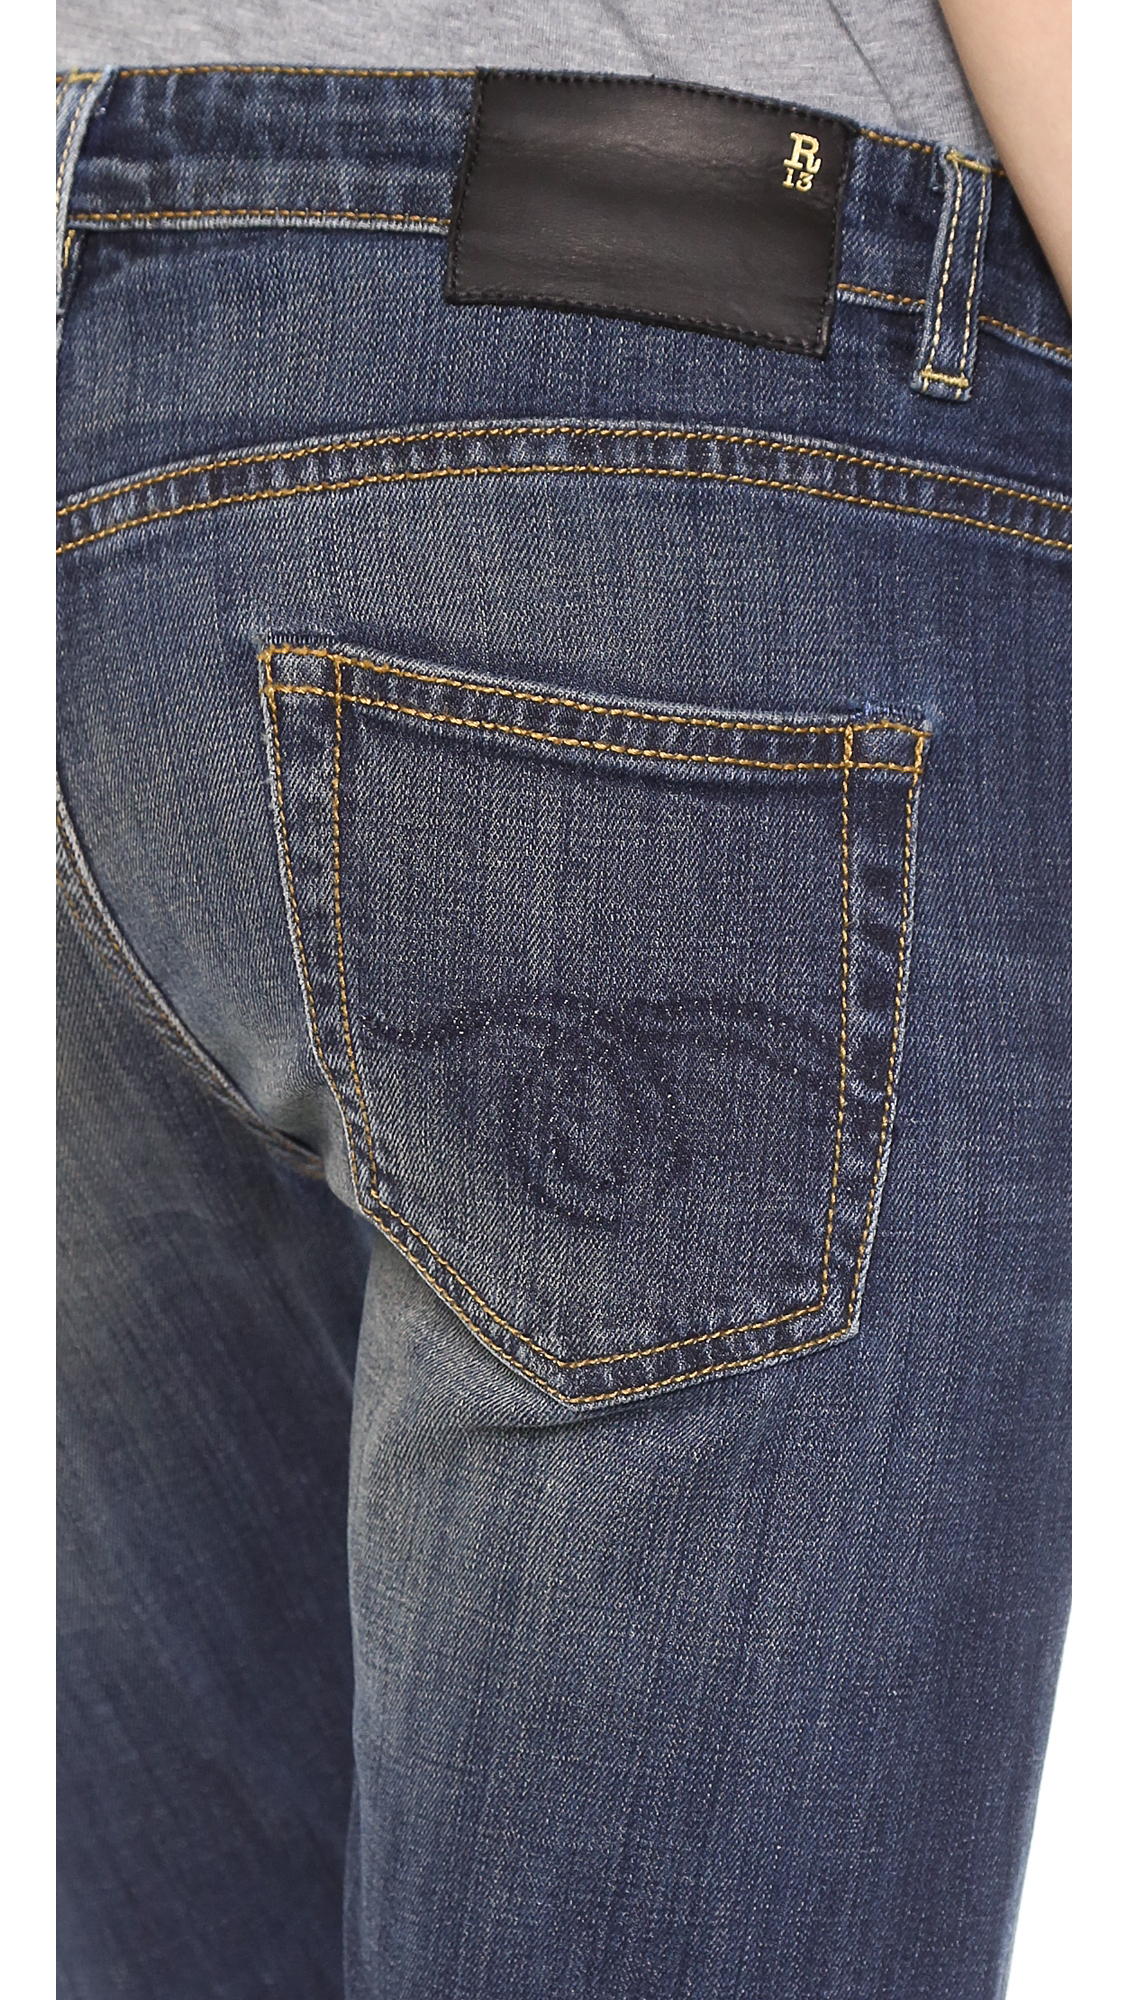 R13 Boy Skinny Jeans in Blue (Vintage Dark) | Lyst